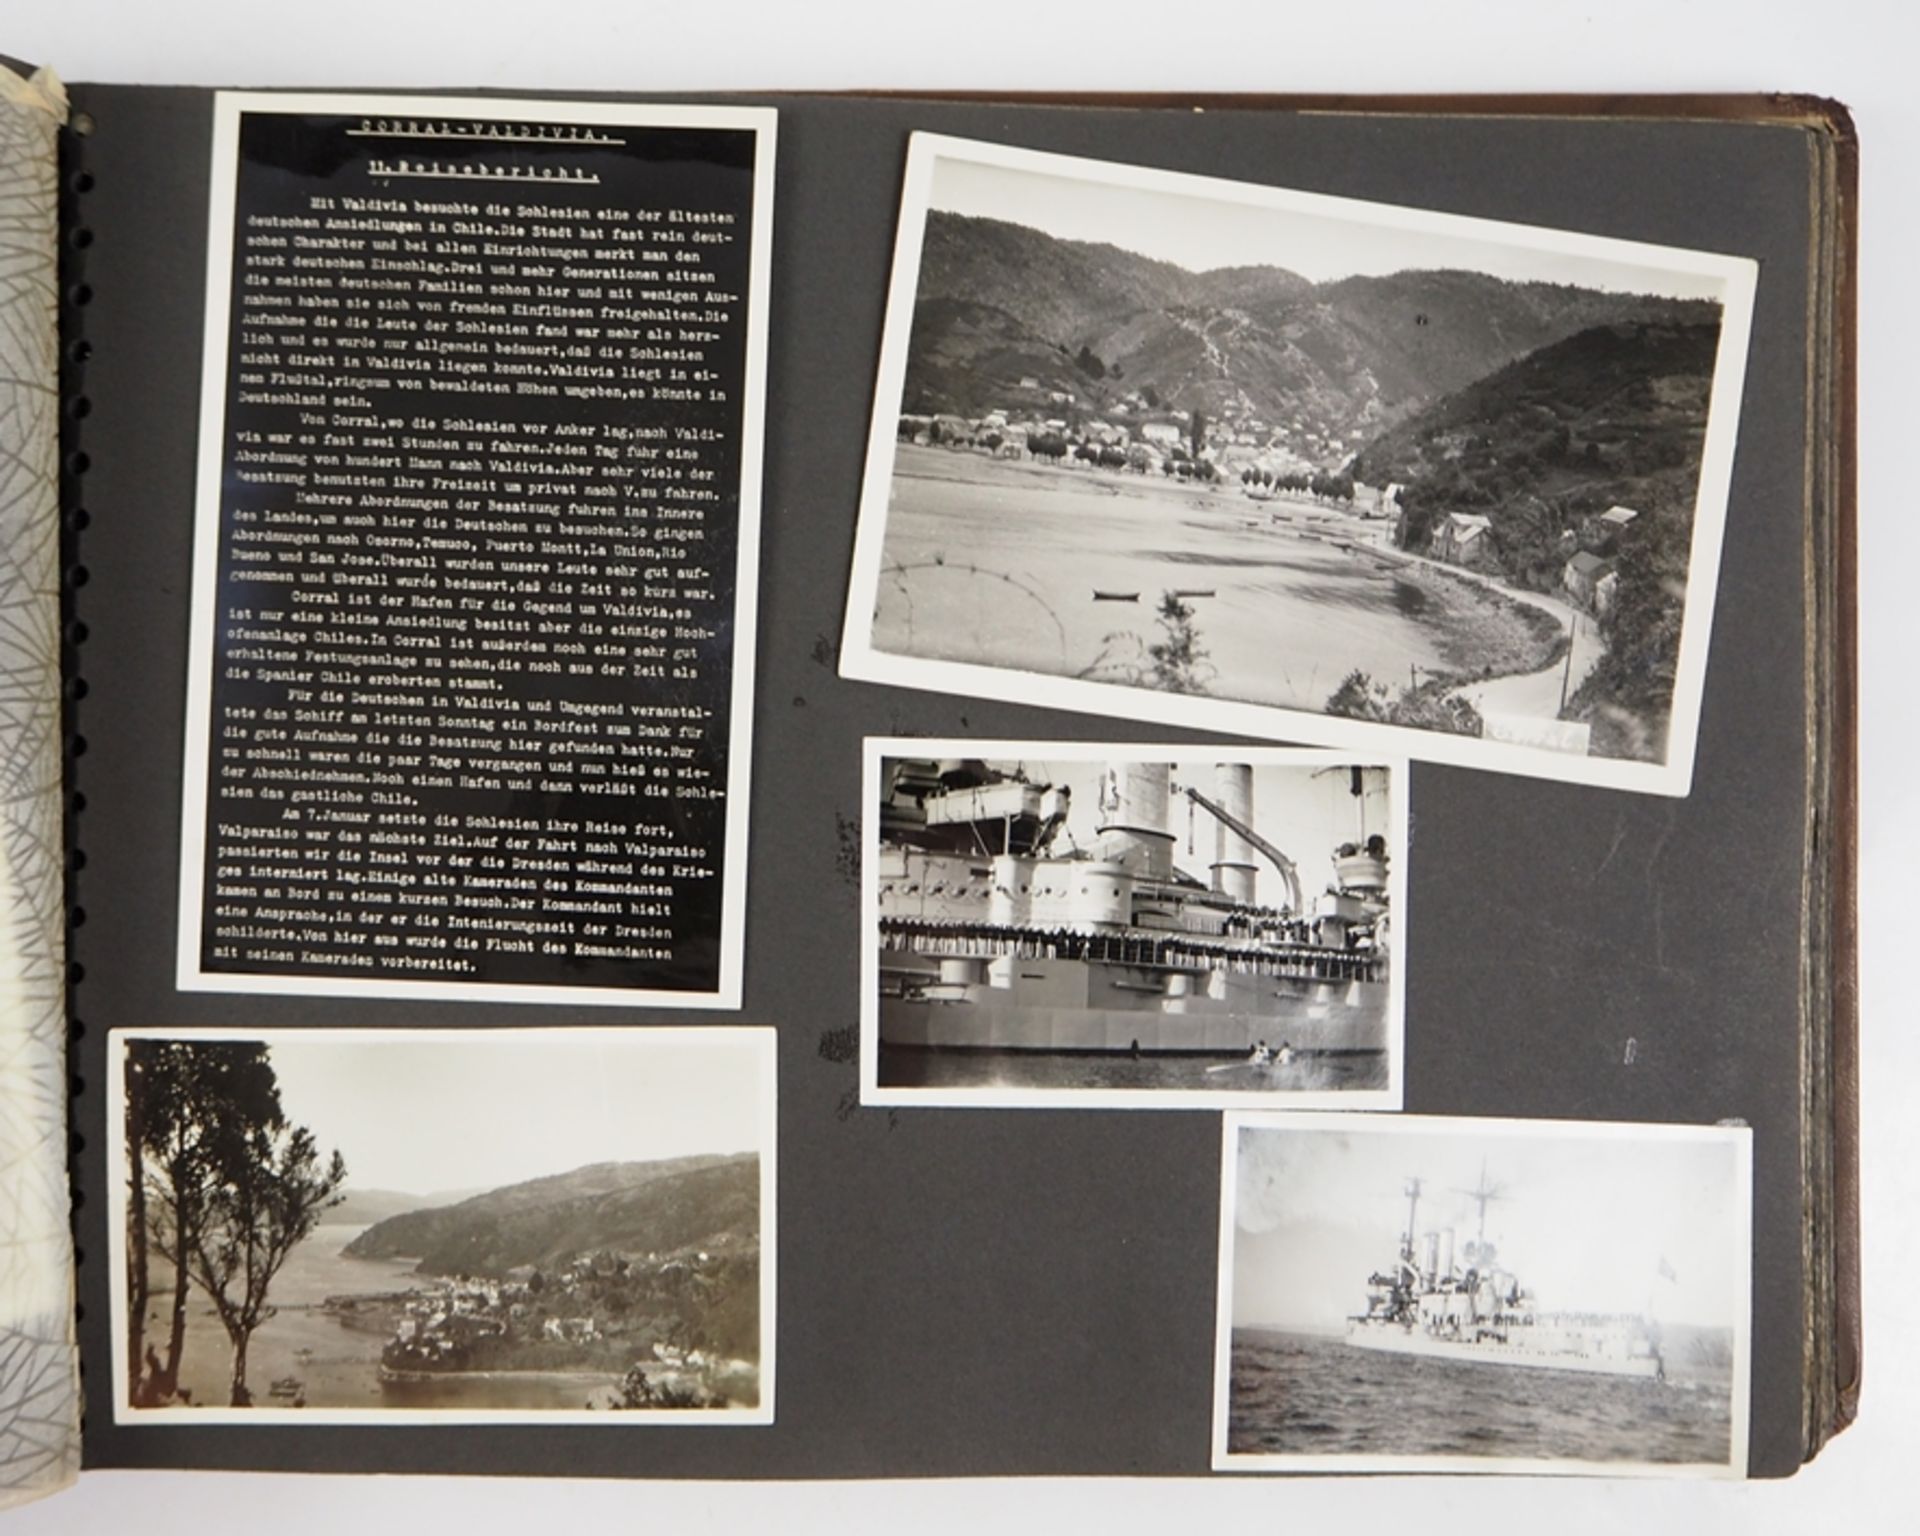 Fotoalbum der Auslandsreise des Linienschiff Schlesien 1937-38. - Image 5 of 9